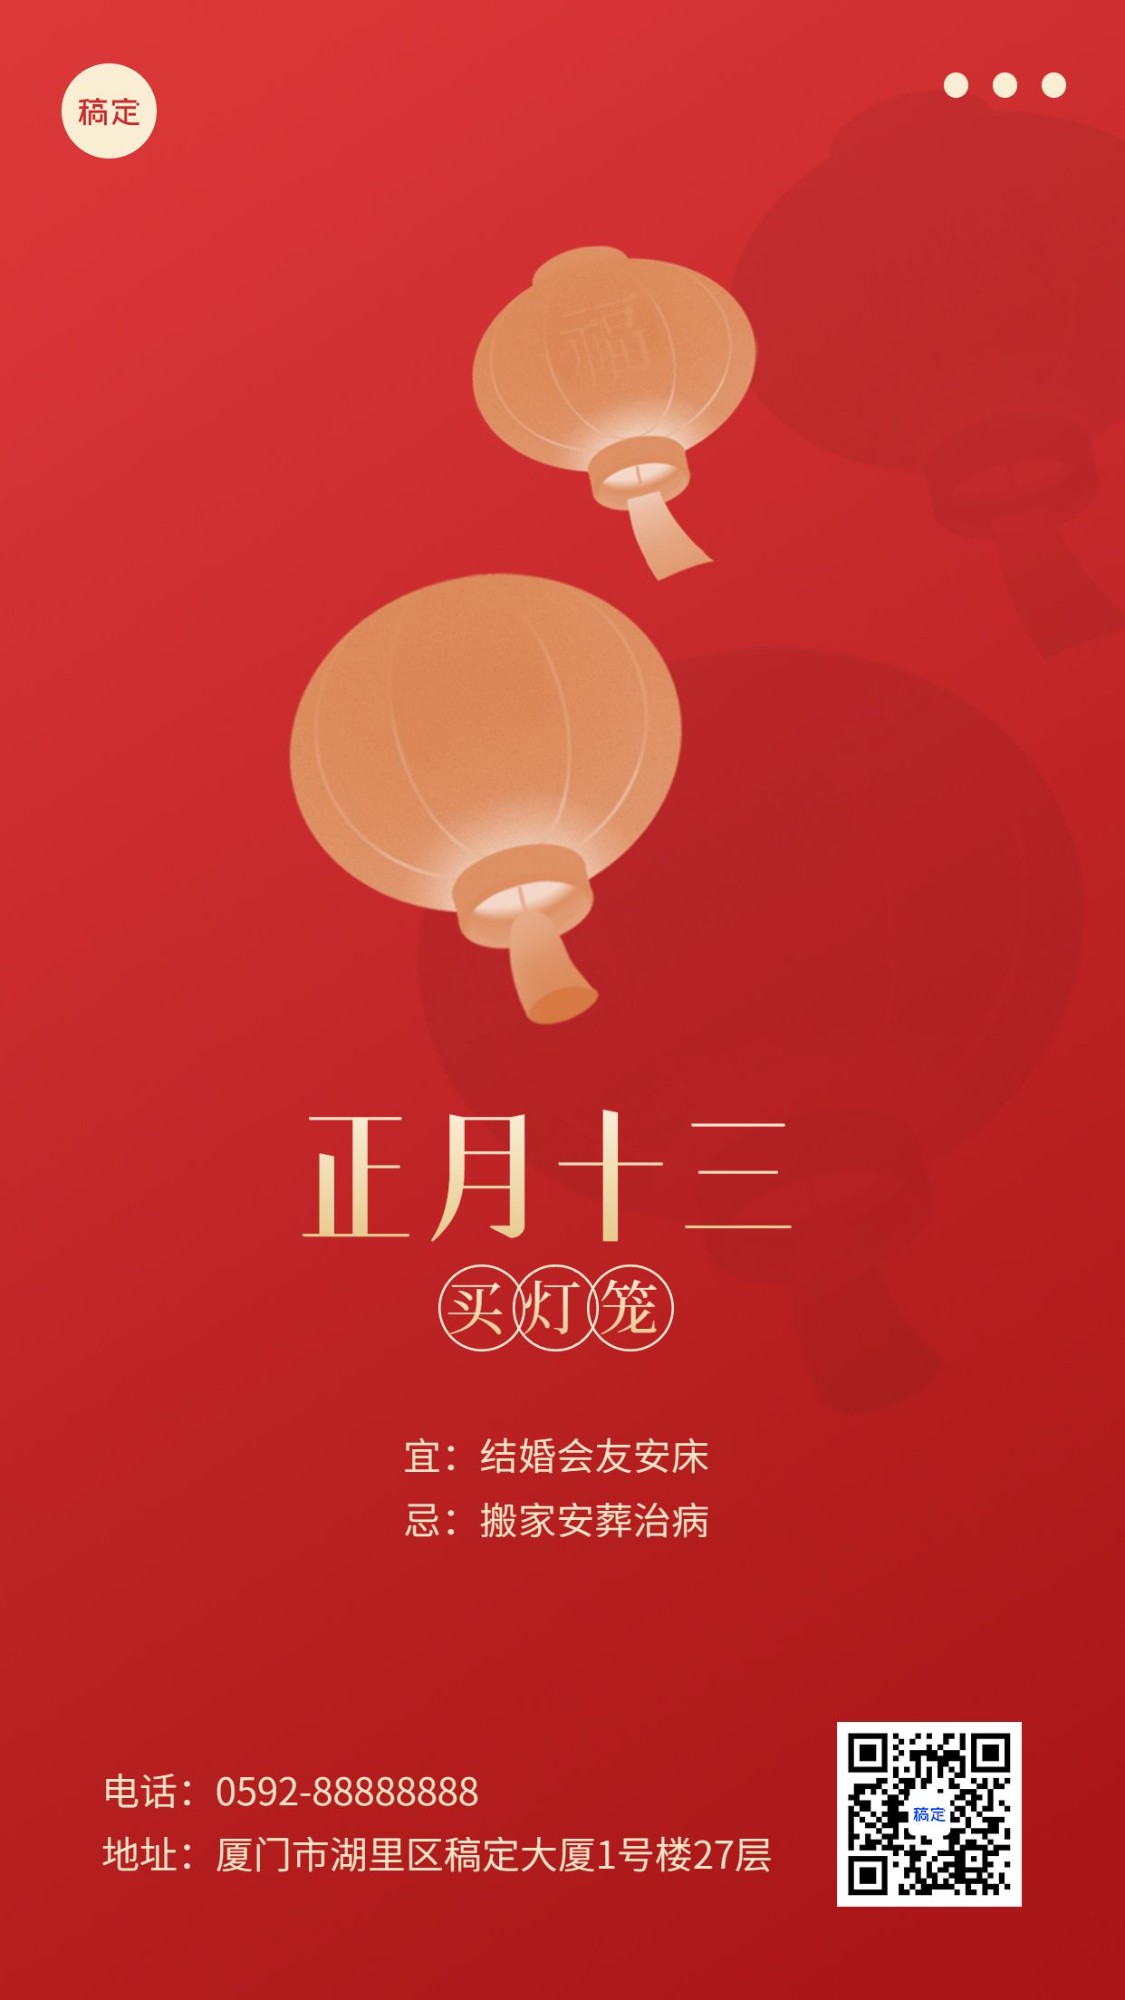 春节新年祝福正月十三简约排版套系手机海报预览效果